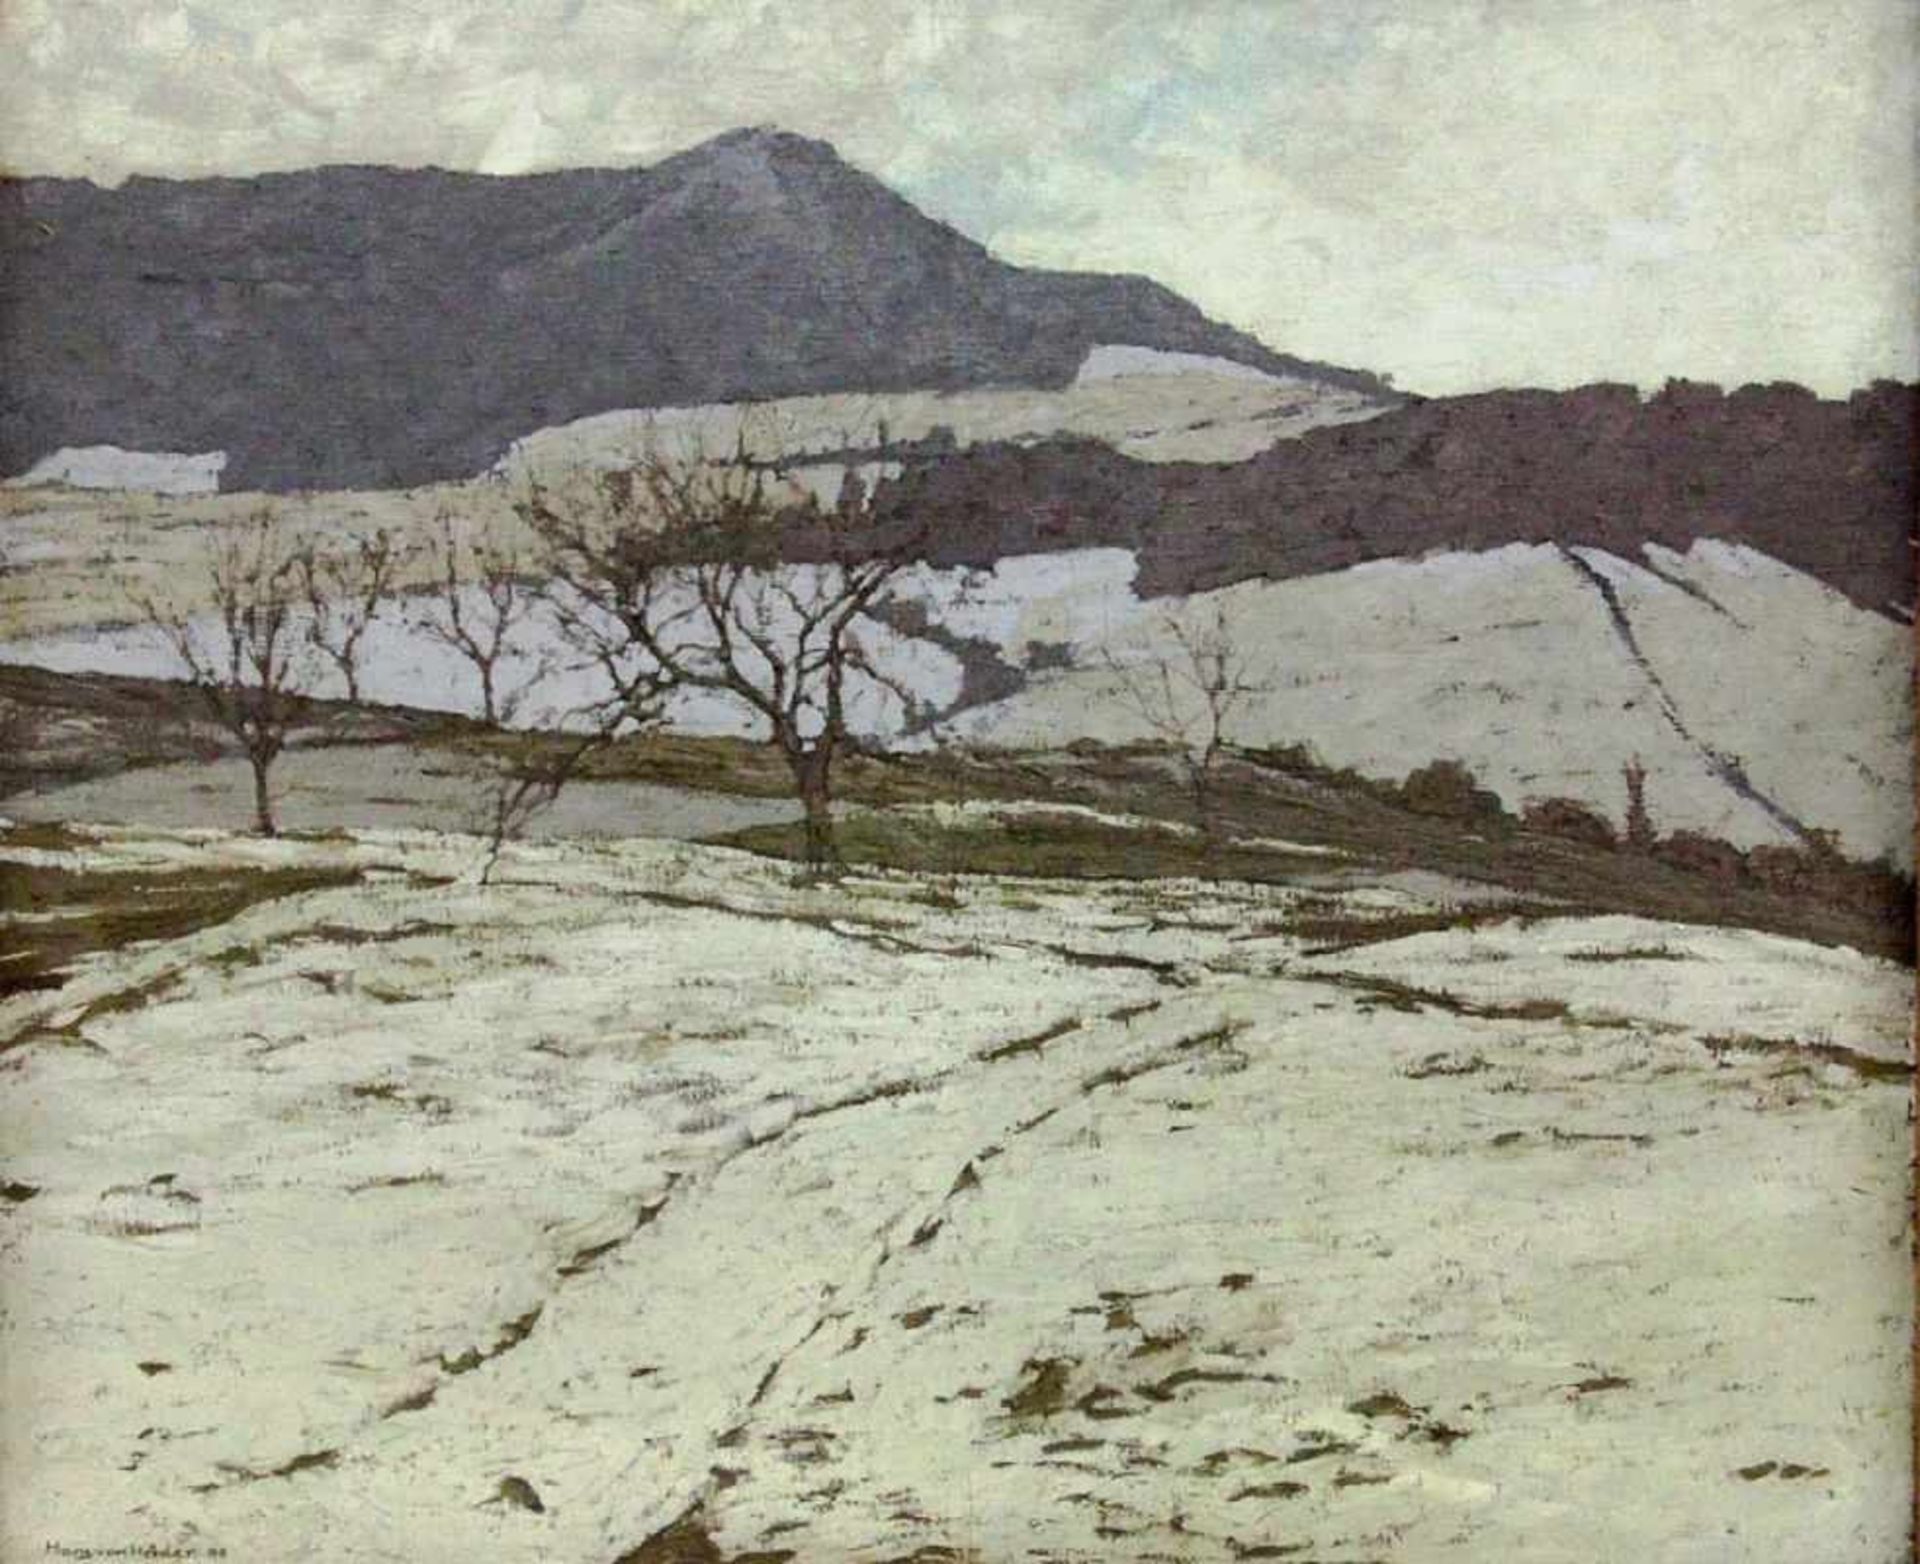 HEIDER, HANS VON München 1867 - 1952 Blaubeuren bei Ulm Winter Landscape. Oil on canvas,signed and